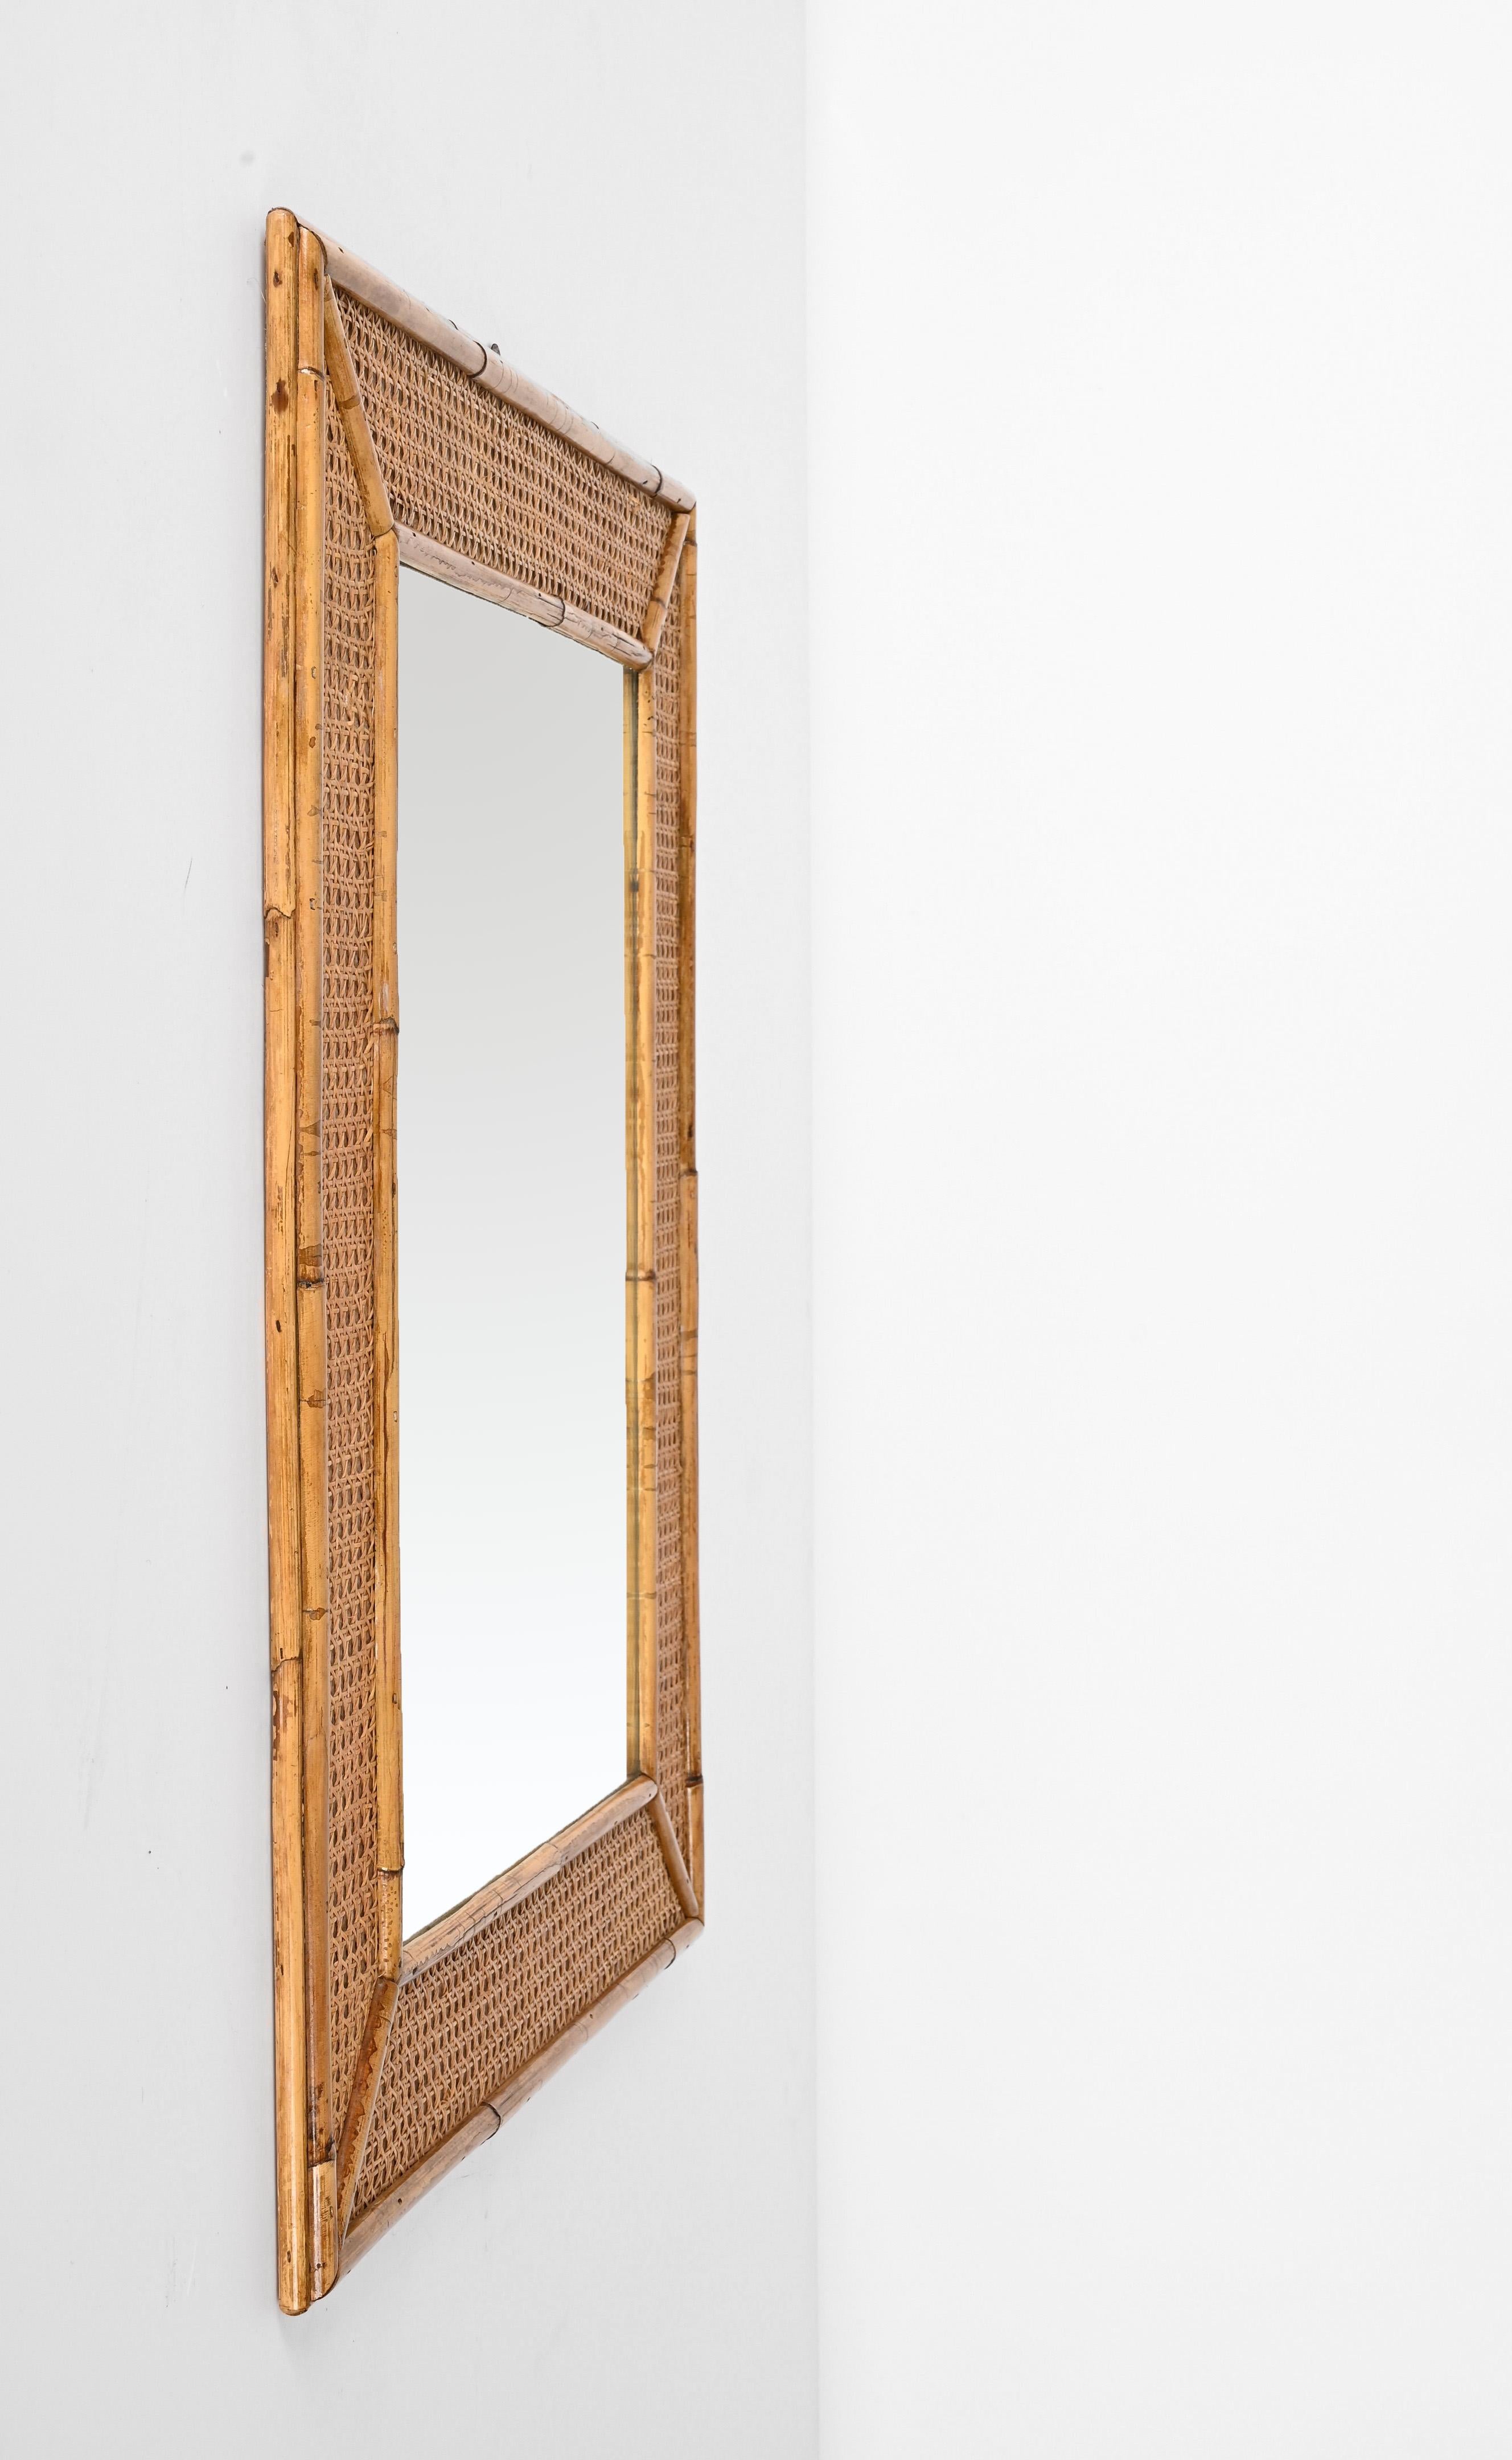 Spektakulärer rechteckiger Spiegel aus der Mitte des Jahrhunderts mit Rahmen aus Bambus und Wiener Stroh. Dieses erstaunliche Stück wurde in den 1970er Jahren in Italien hergestellt.

Die Besonderheit dieses Stücks liegt in seinem Rahmen, denn er